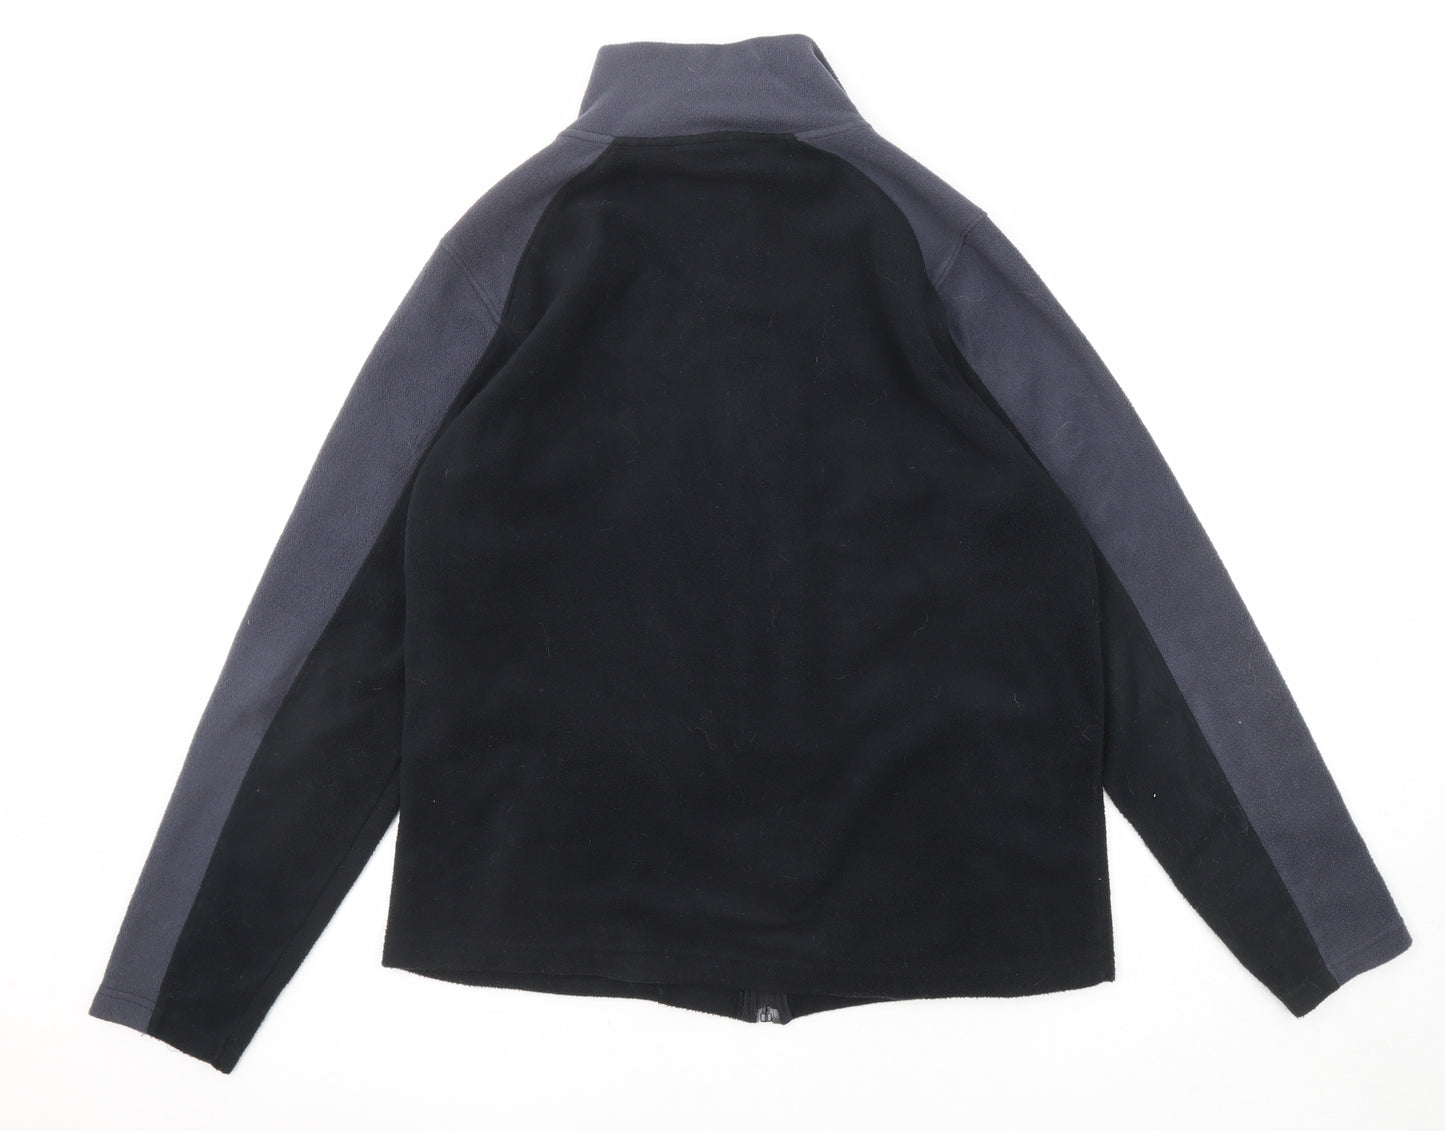 Pierre Cardin Mens Black Jacket Size L Zip